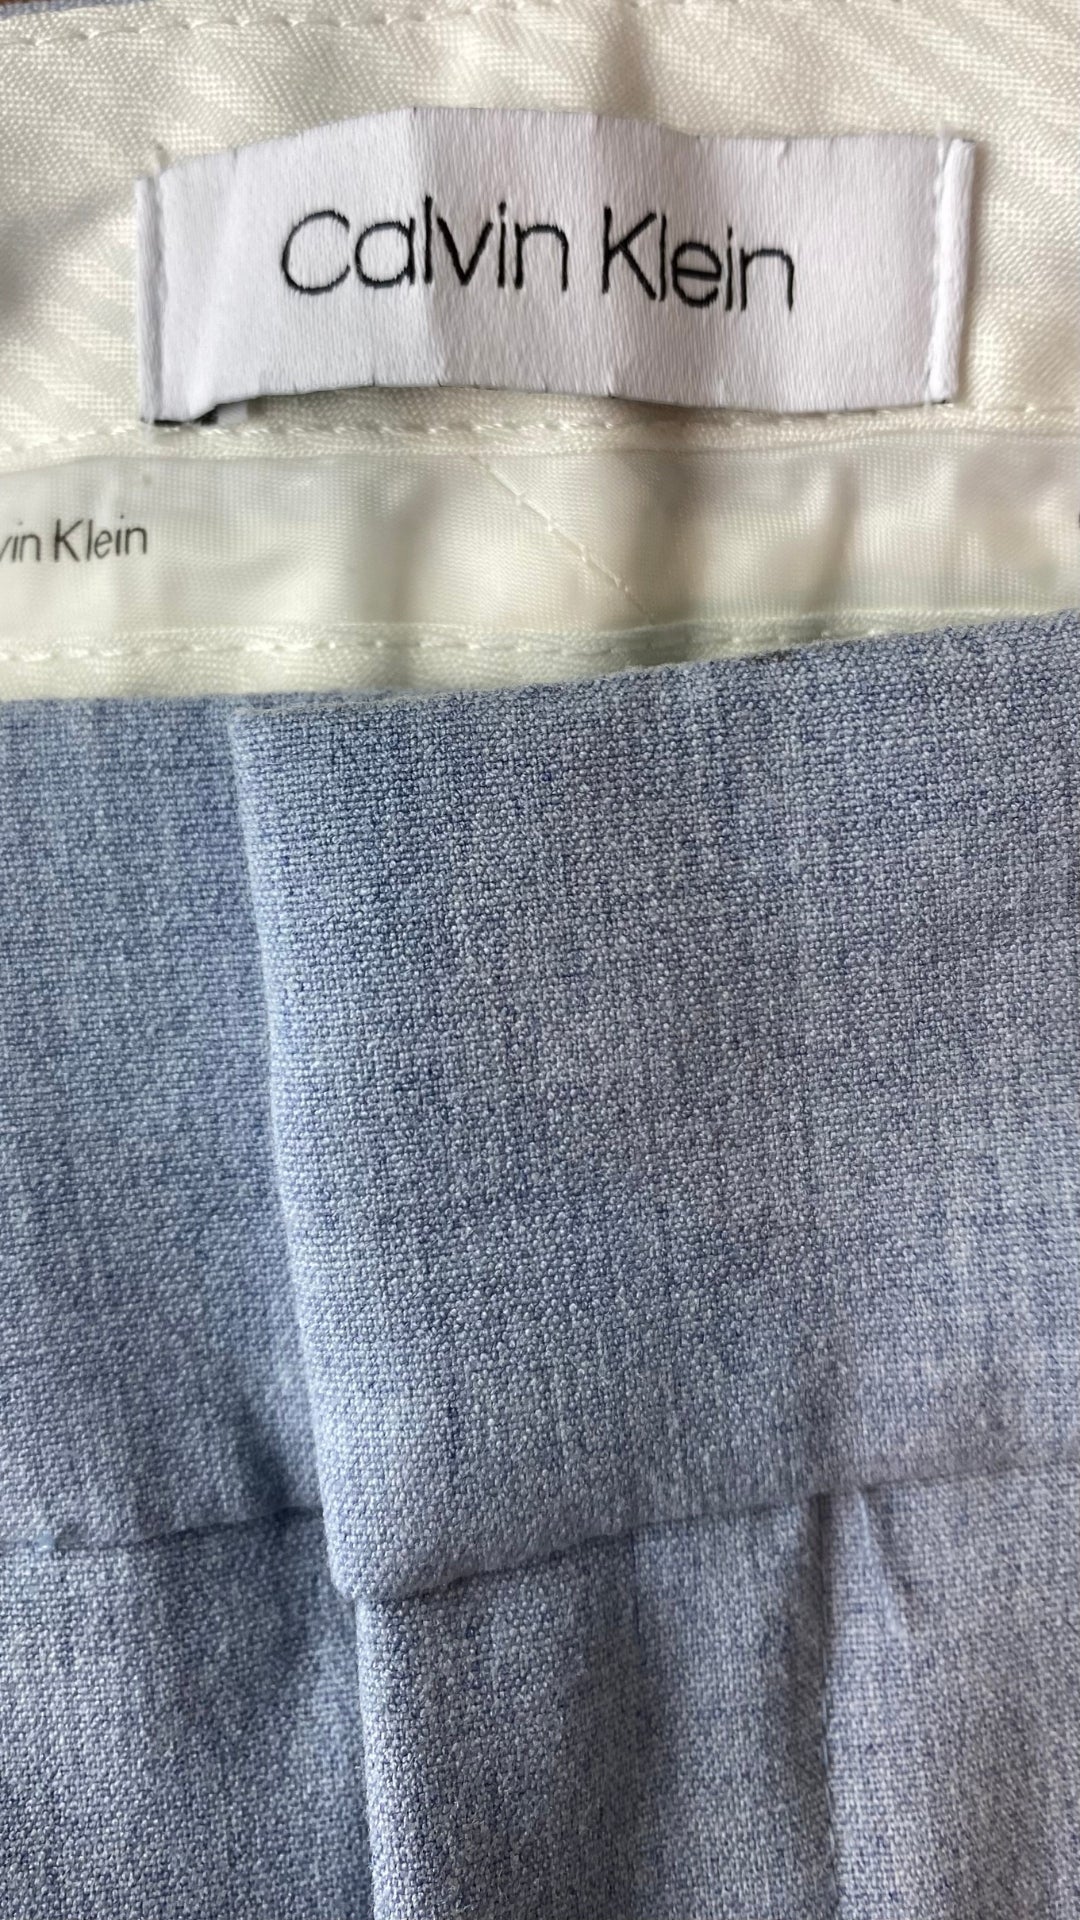 Pantalon droit bleu ciel Calvin Klein, taille 2 (small). Vue de l'étiquette de marque.